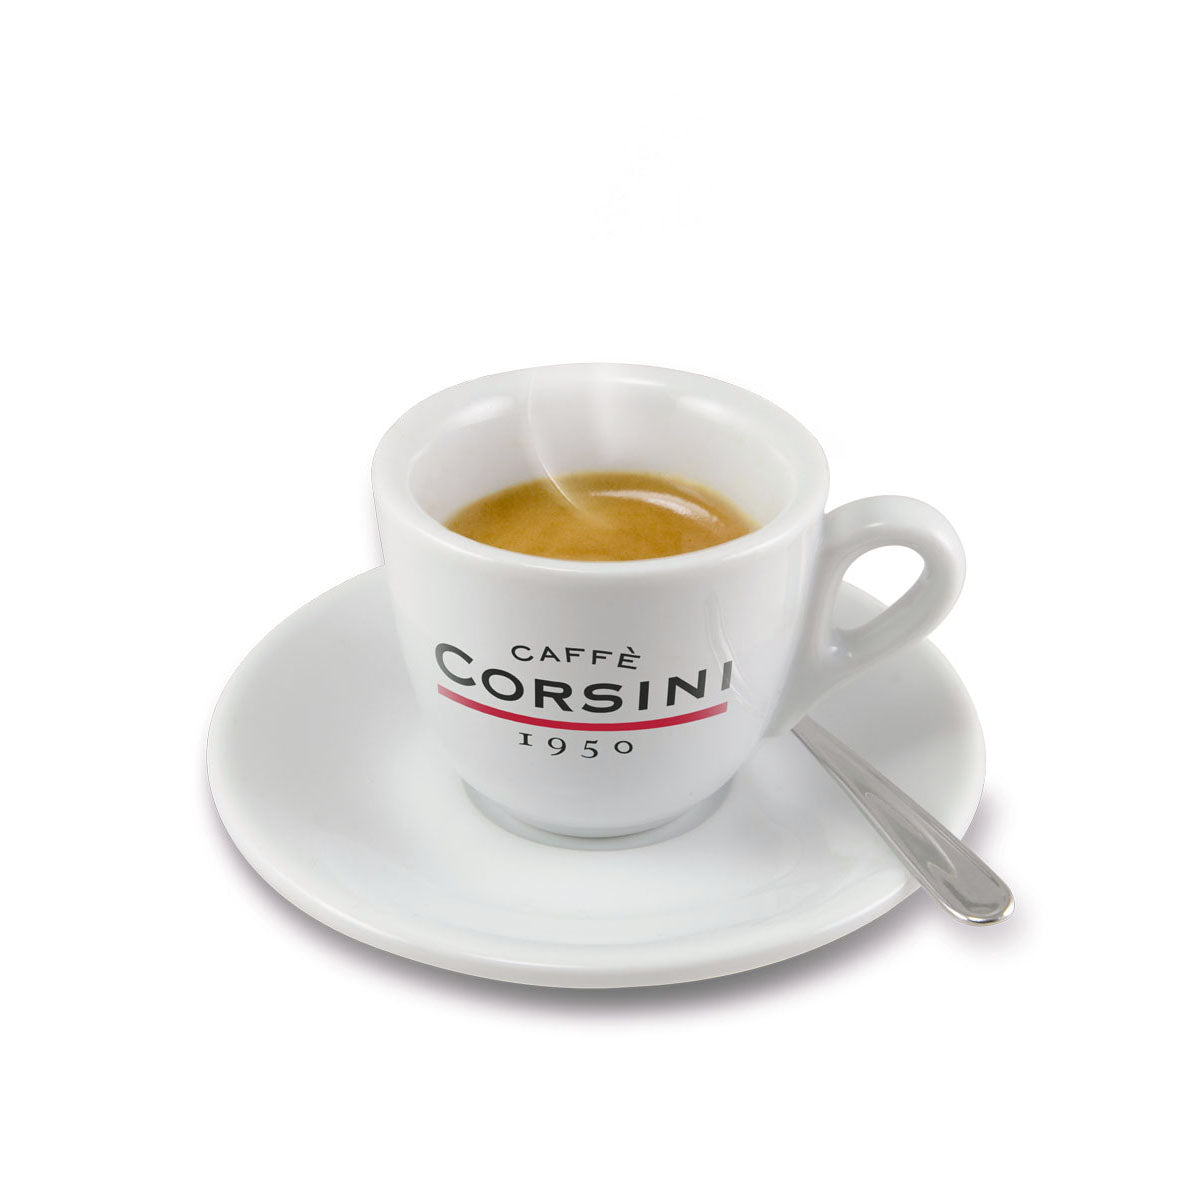 Tazzina Caffè Corsini in porcellana